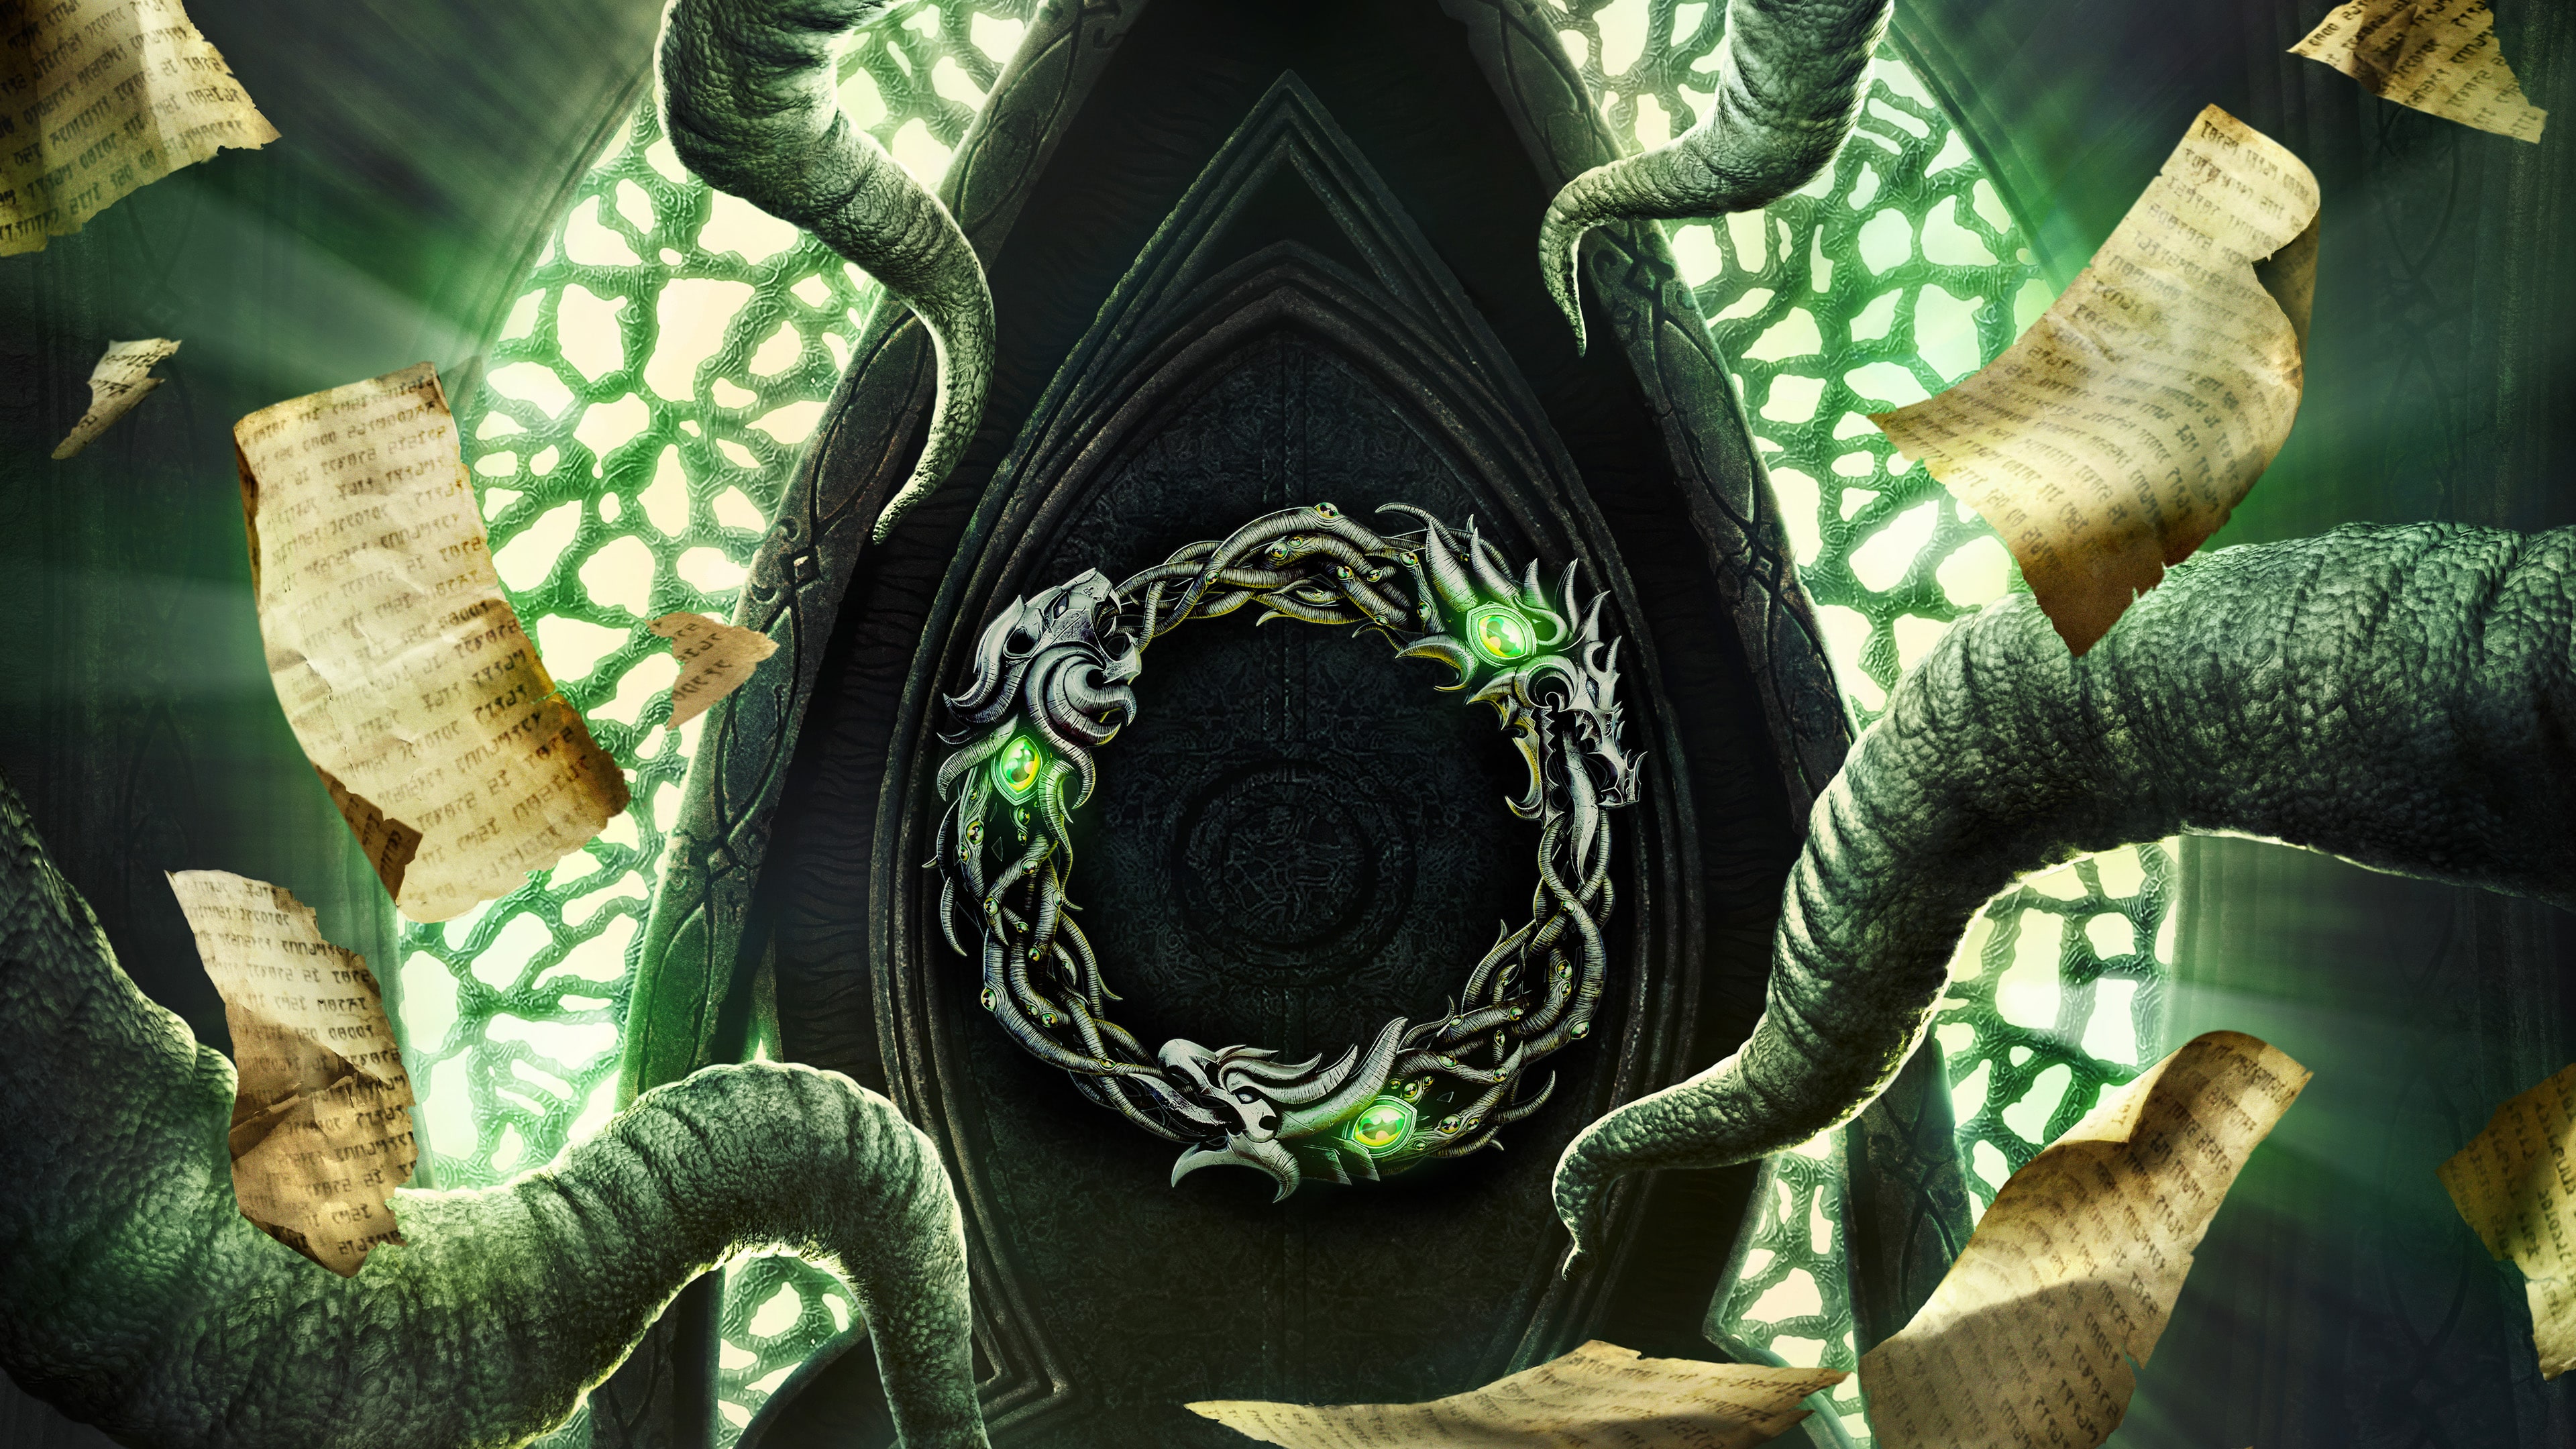 The Elder Scrolls Online Deluxe Collection: Necrom (简体中文, 英语)